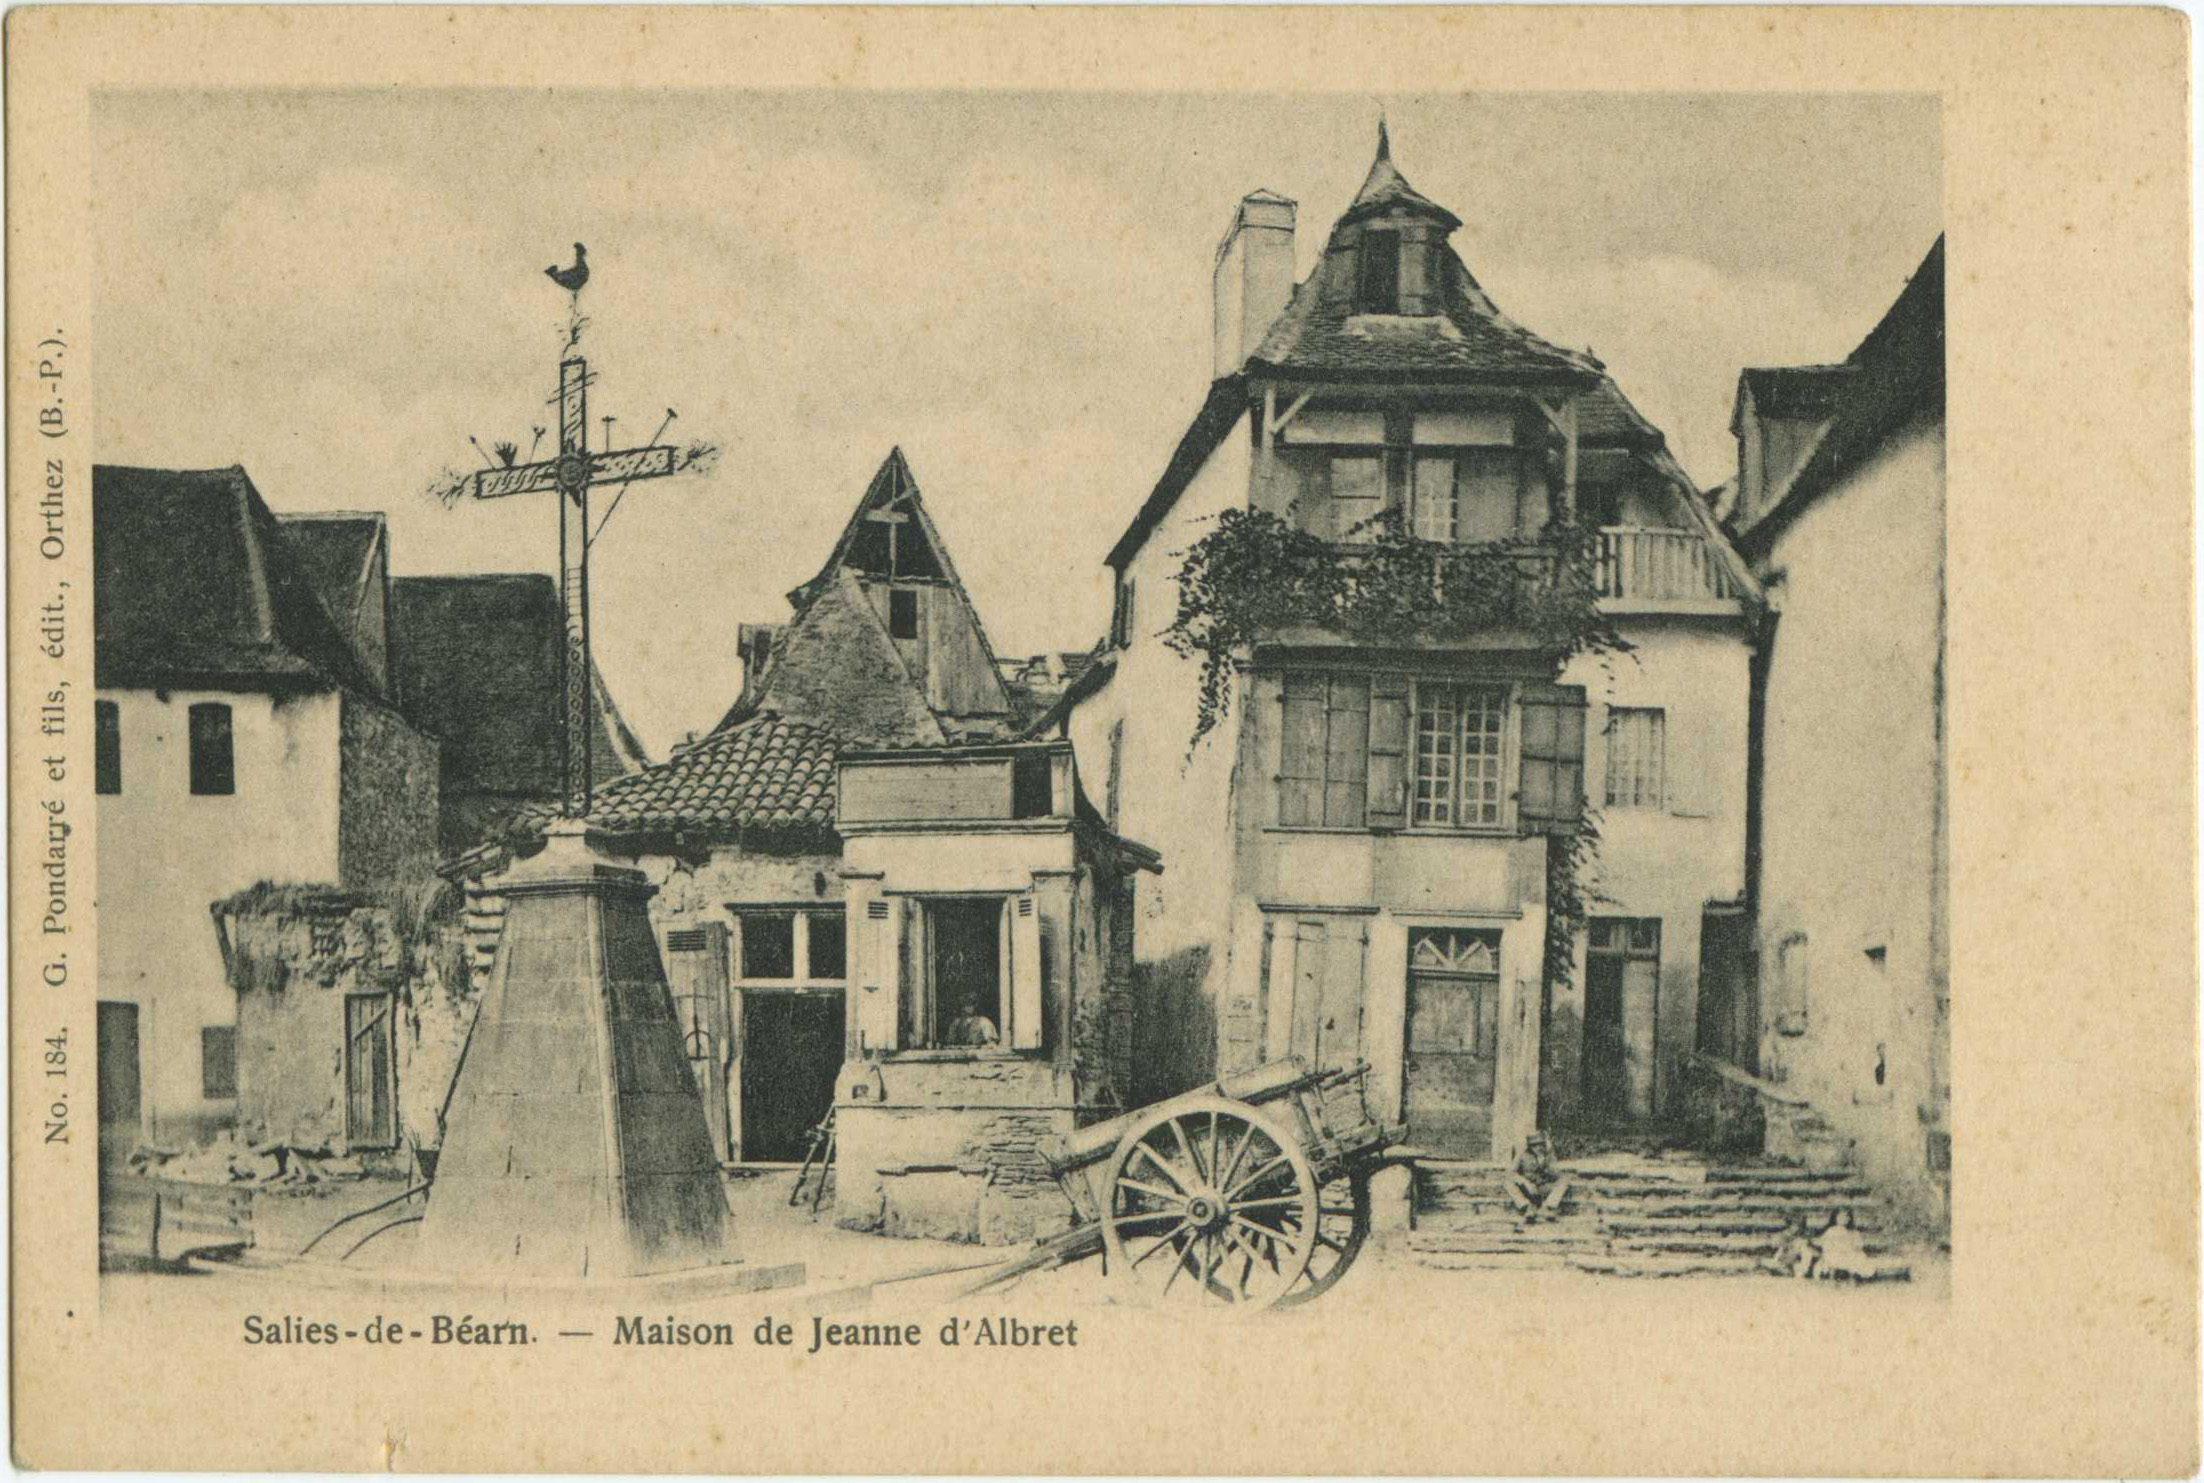 Salies-de-Béarn - Maison de Jeanne d'Albret